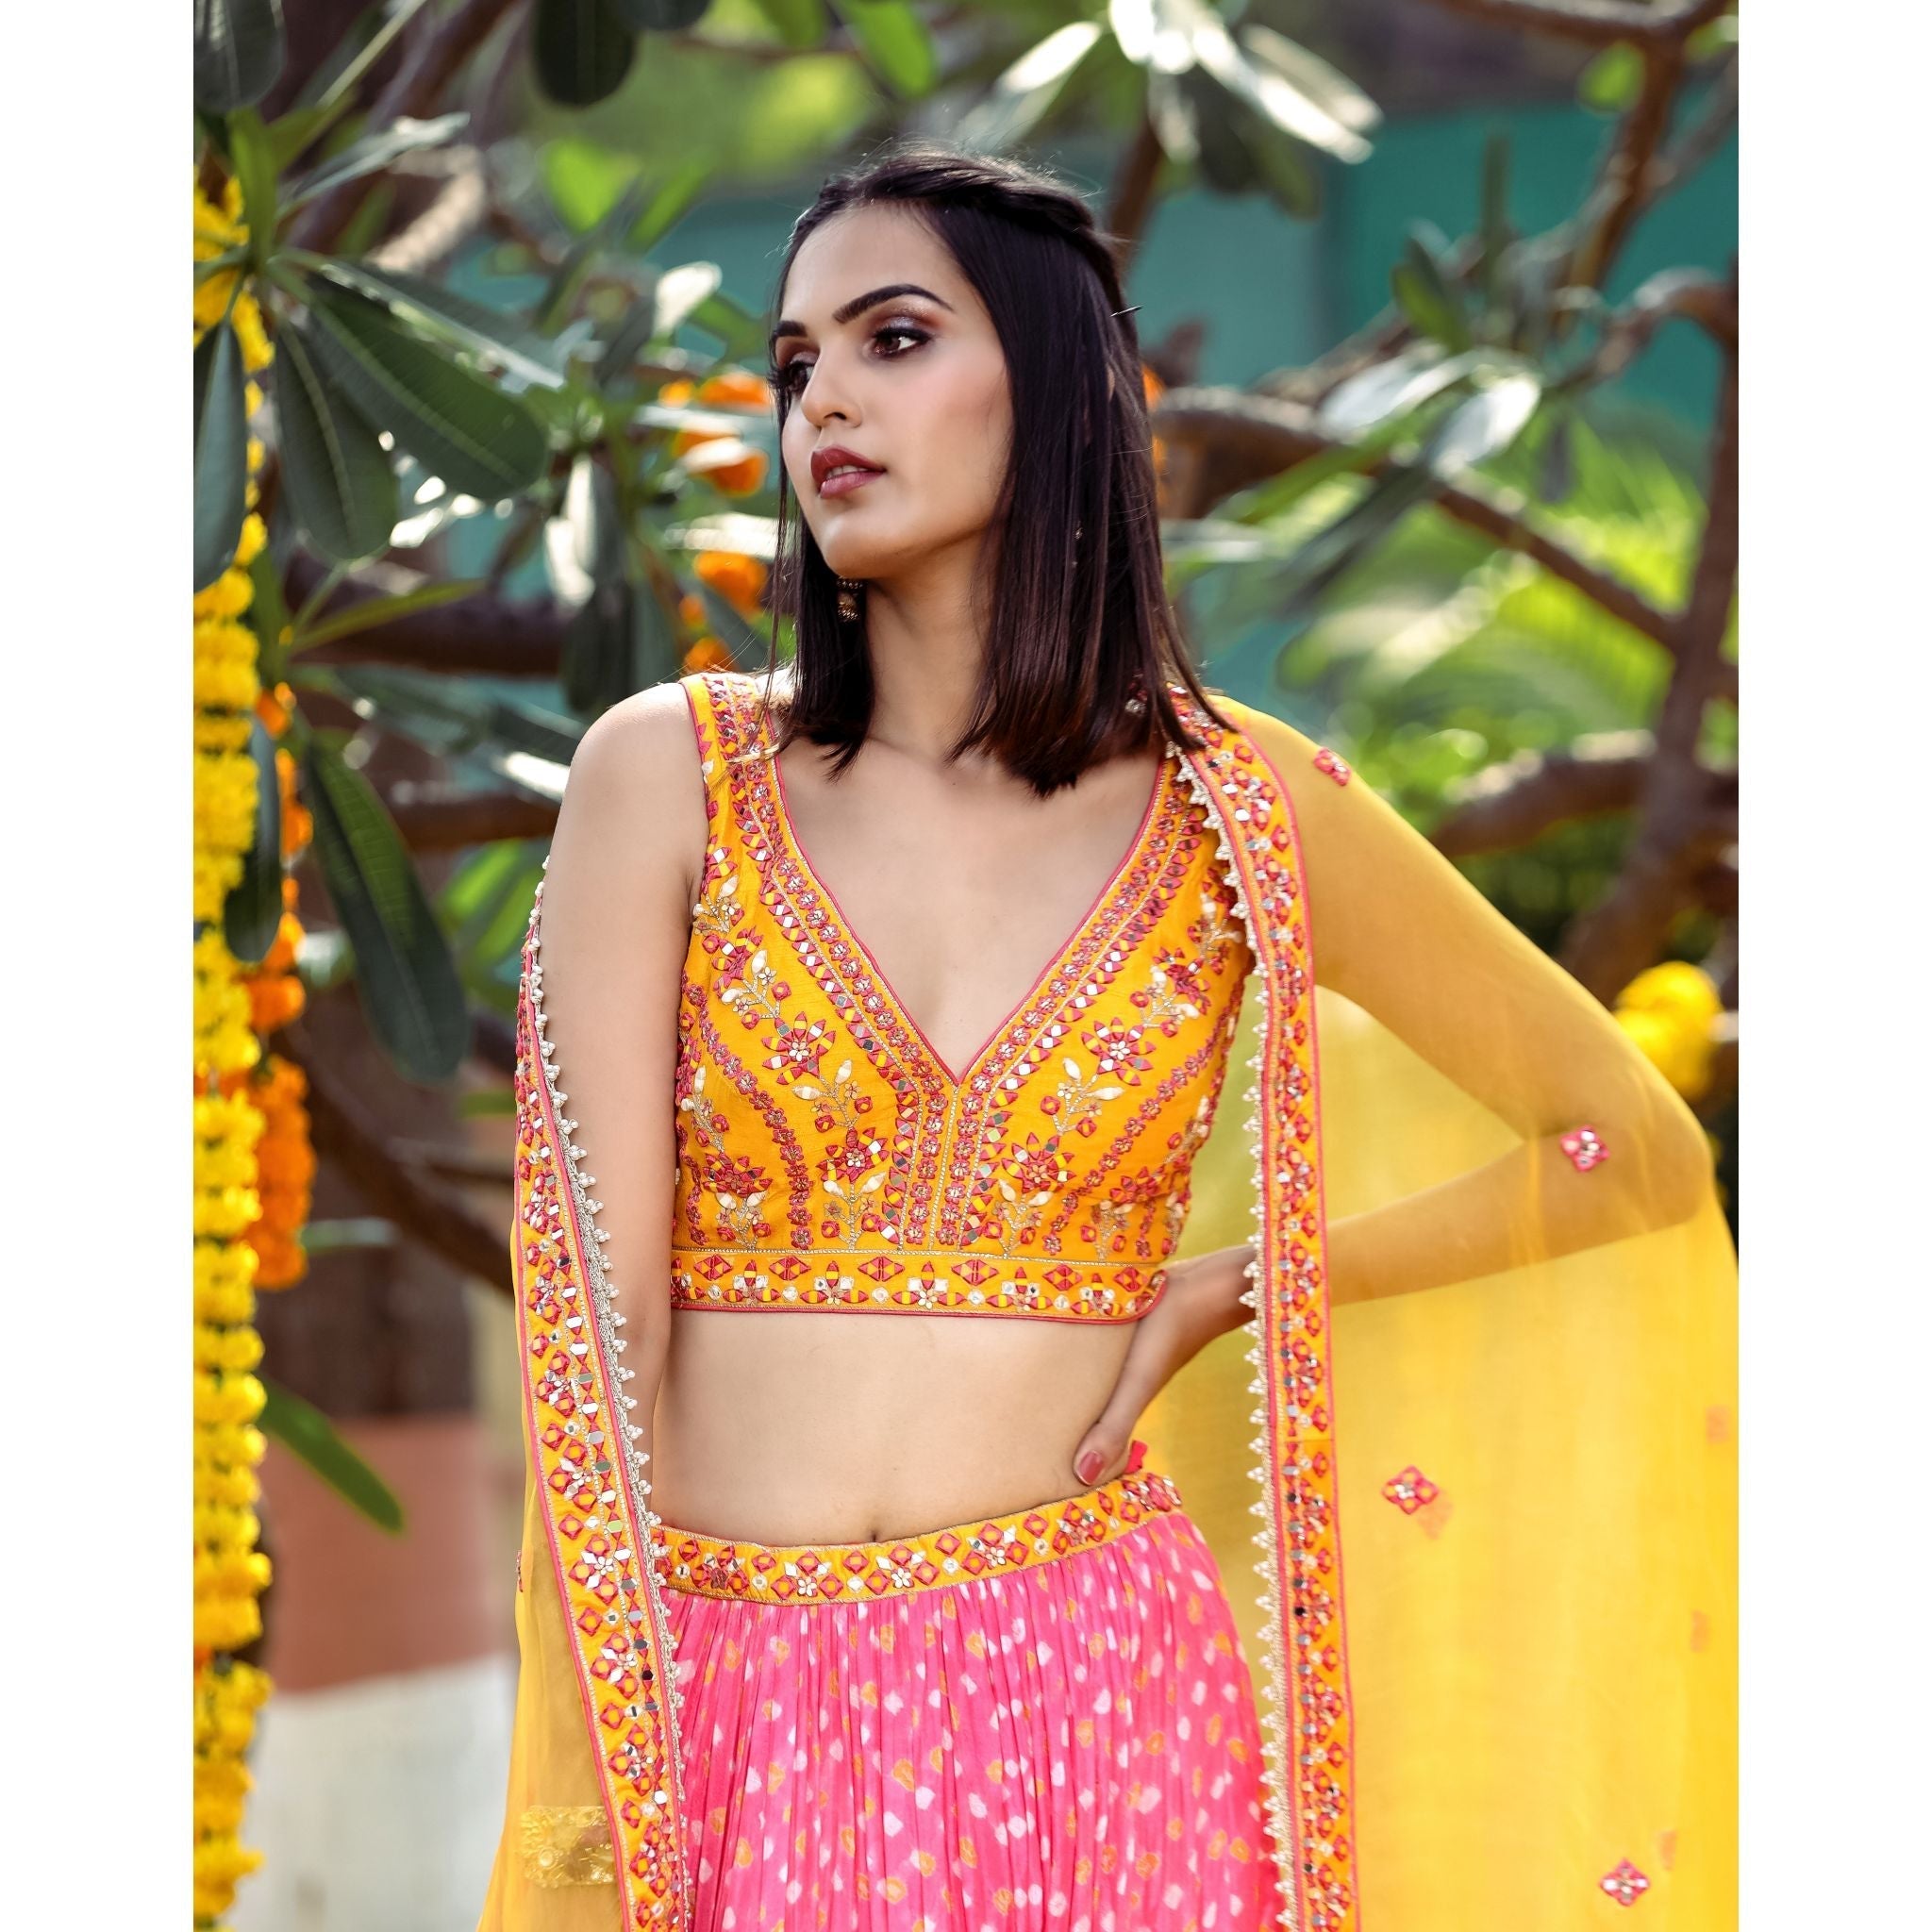 Yellow And Pink Bandhani Lehenga Set - Indian Designer Bridal Wedding Outfit